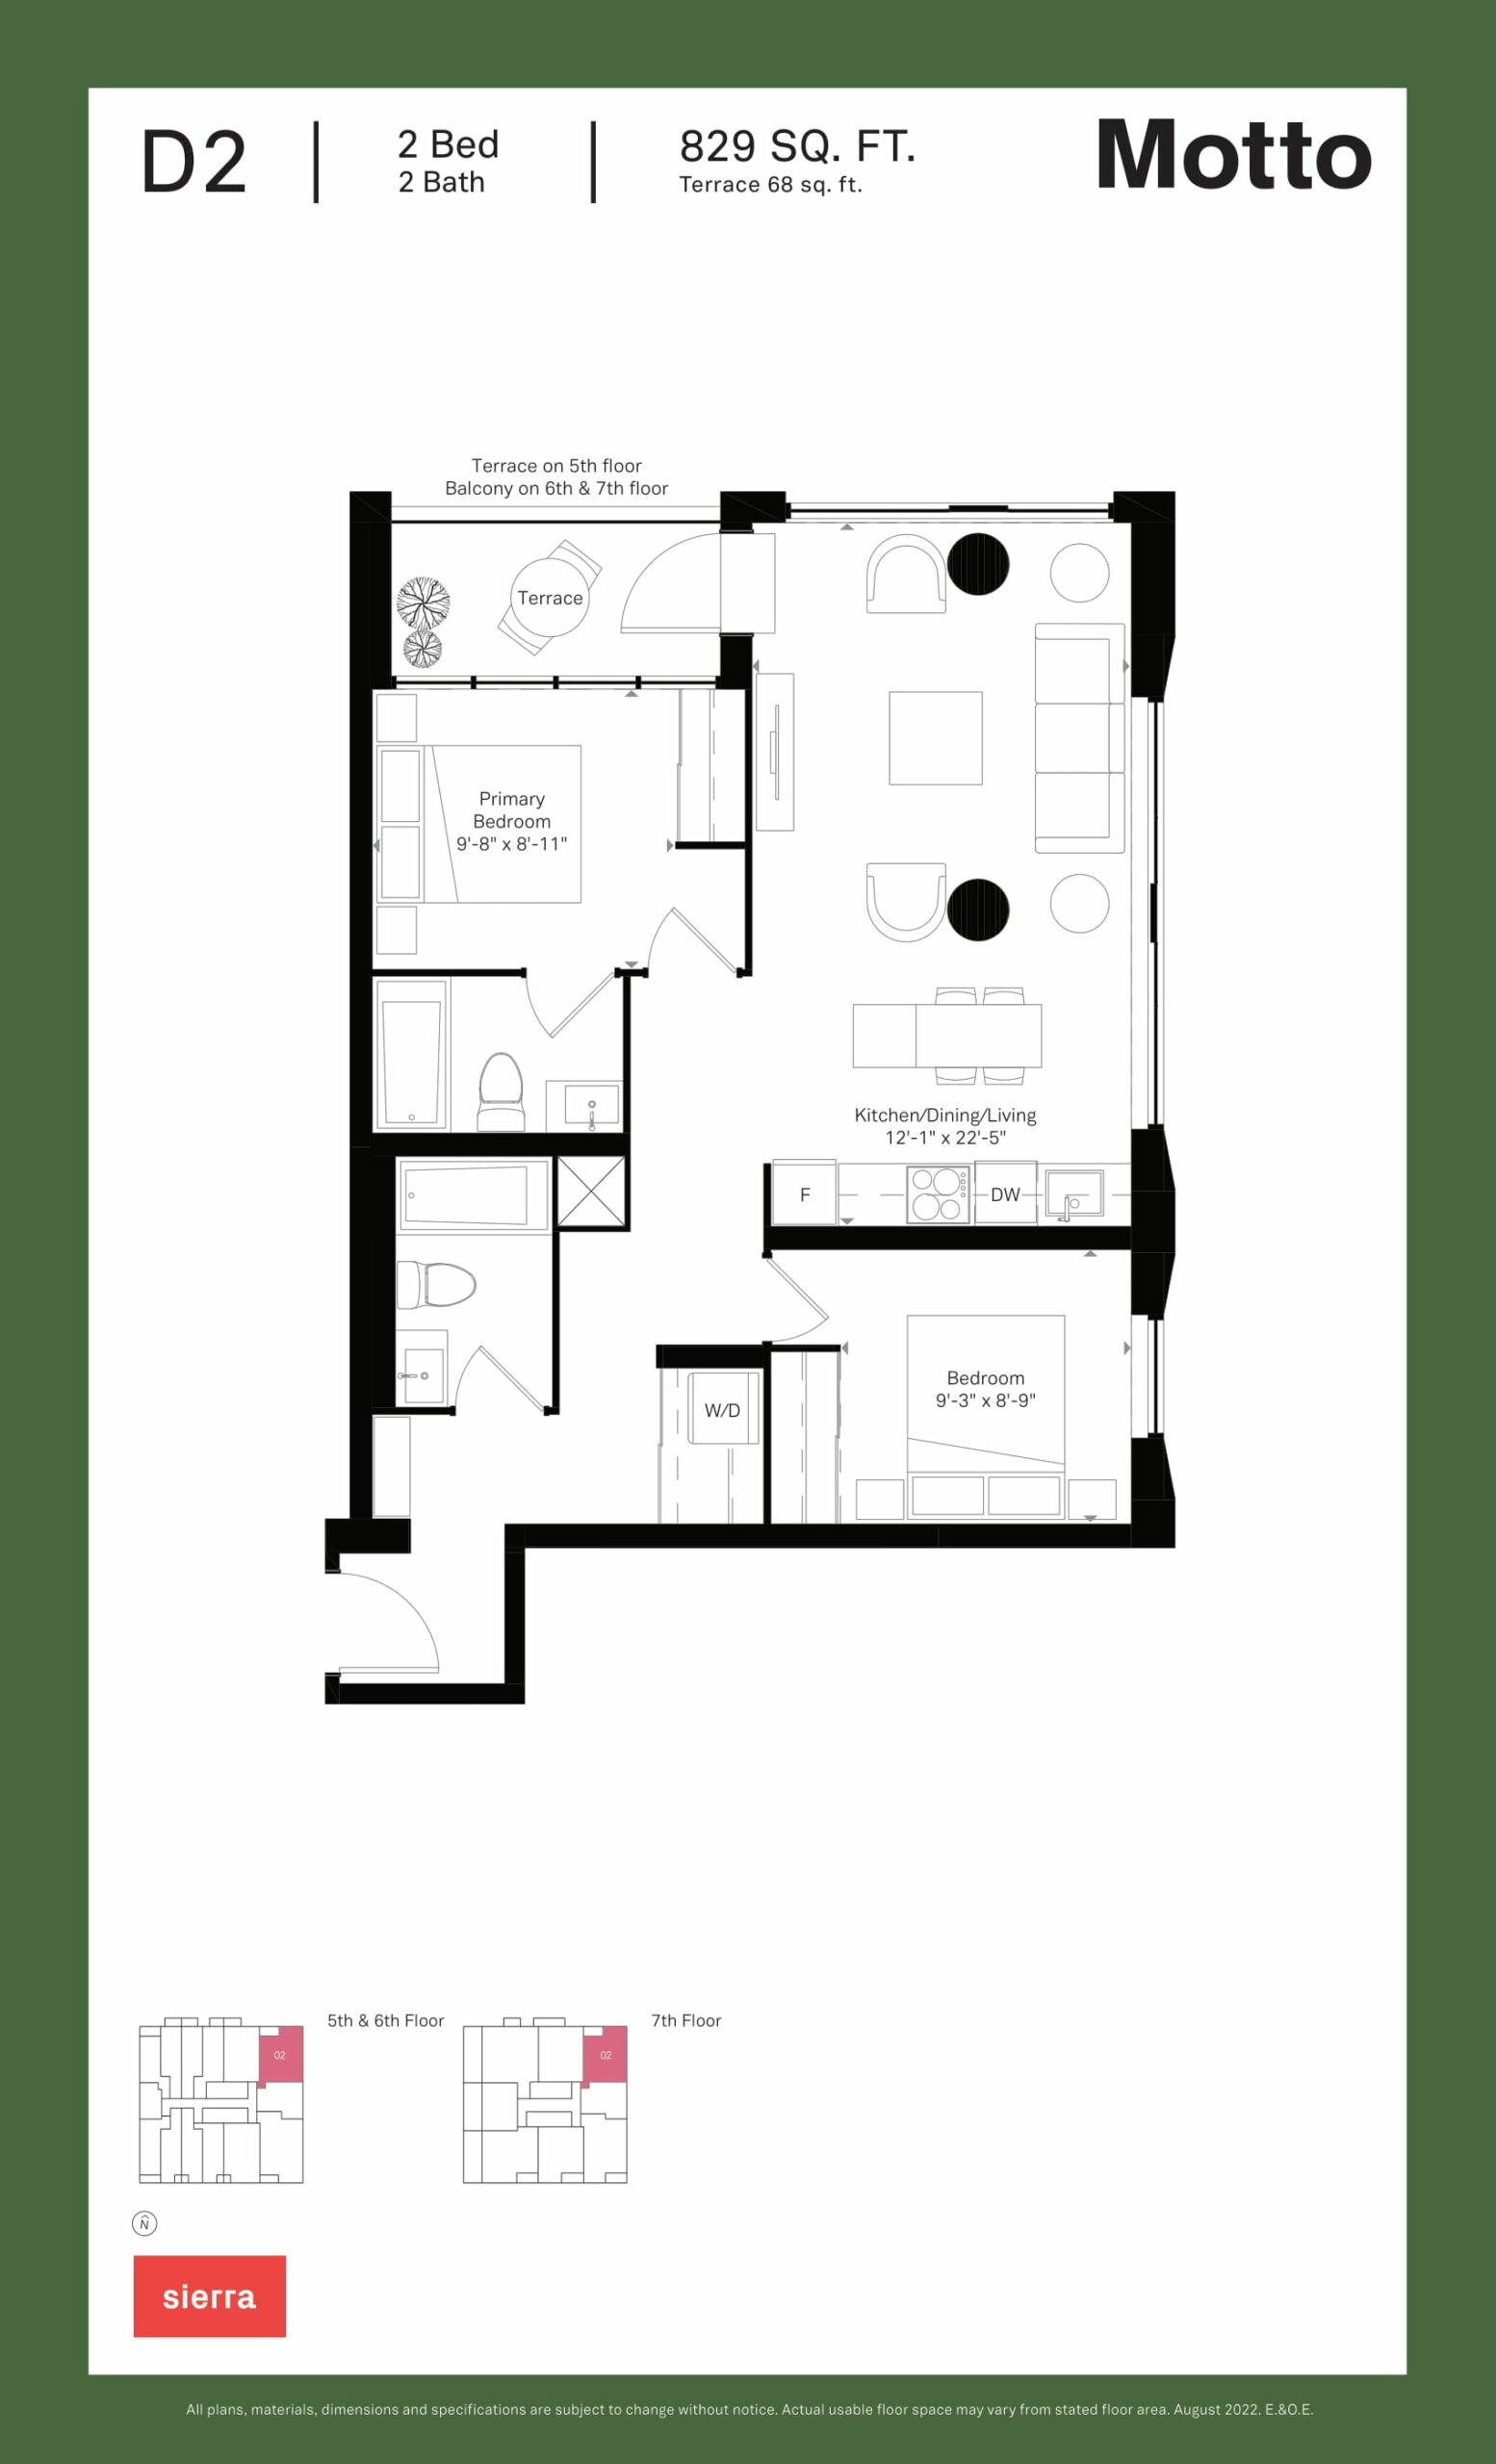 Motto - Floor Plans-17